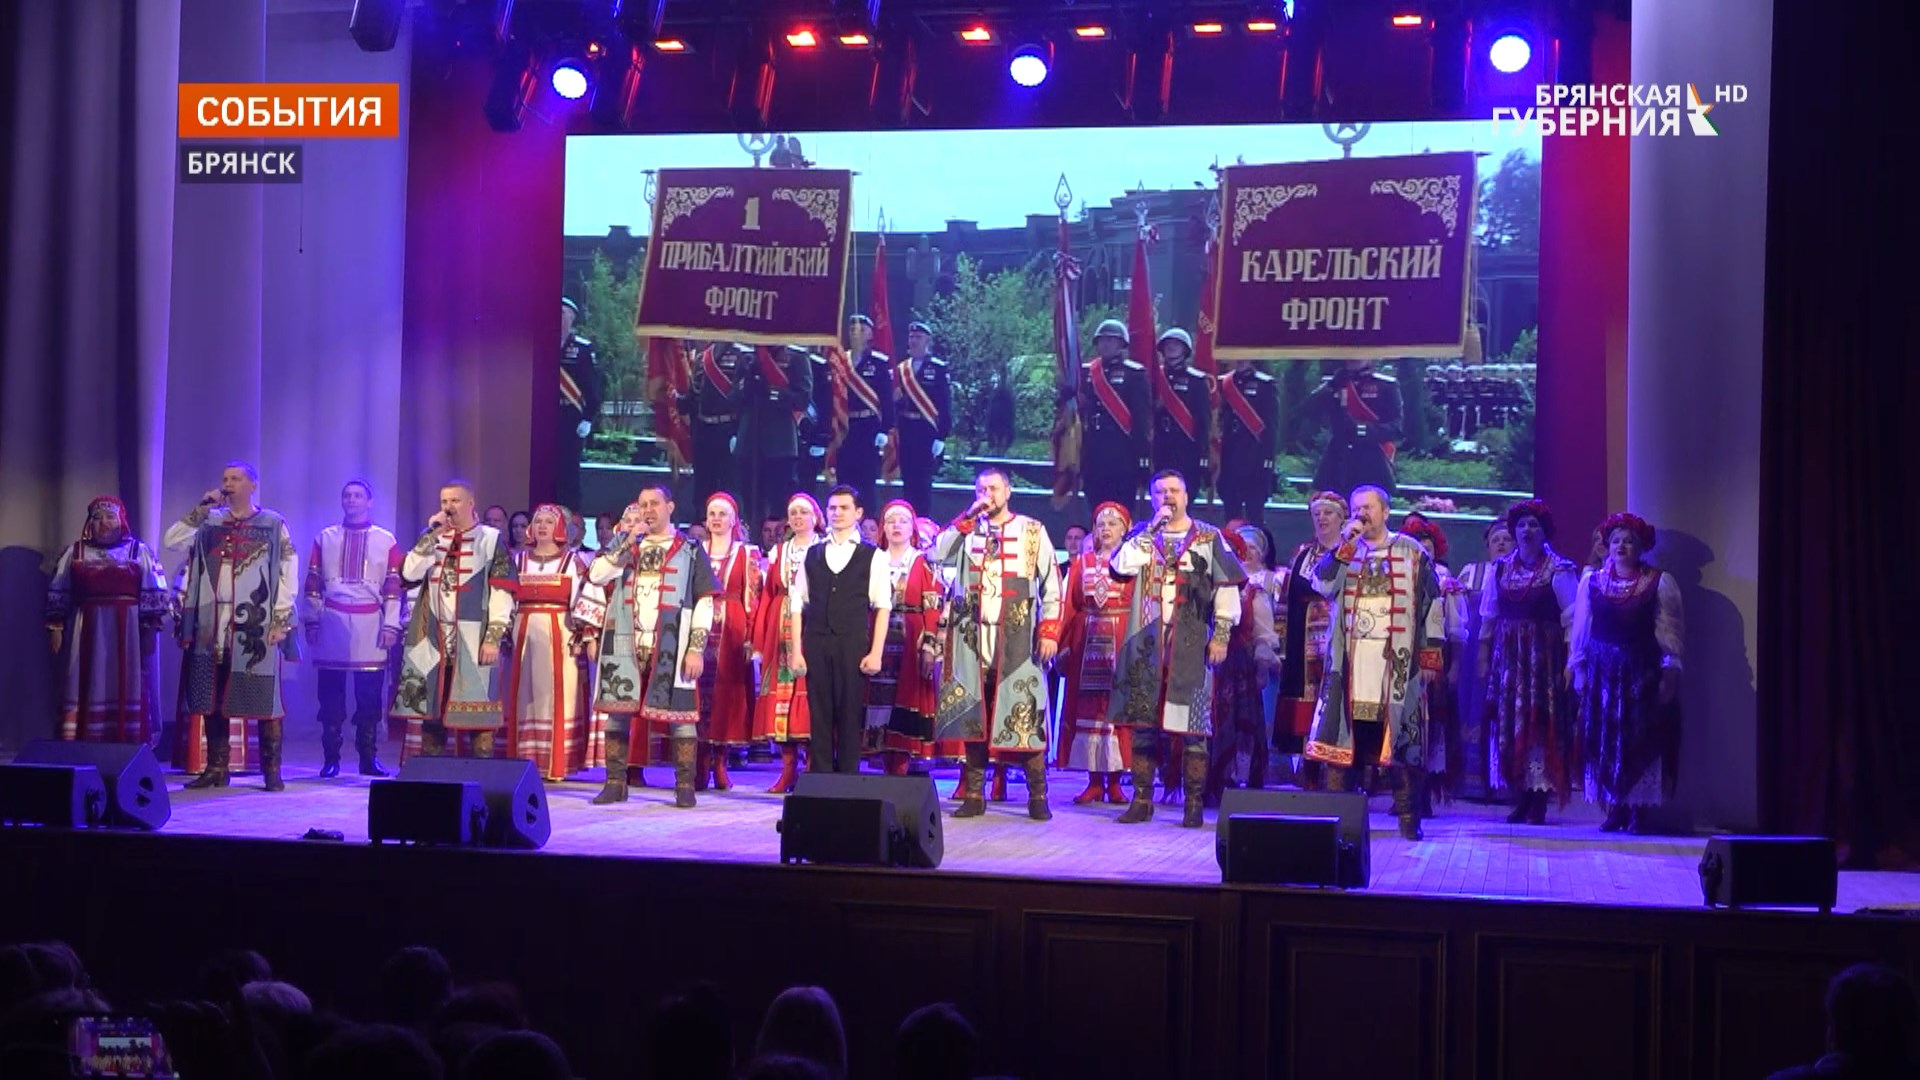 Во Дворце культуры БМЗ в Брянске прошел концерт в честь годовщины воссоединения Крыма с Россией